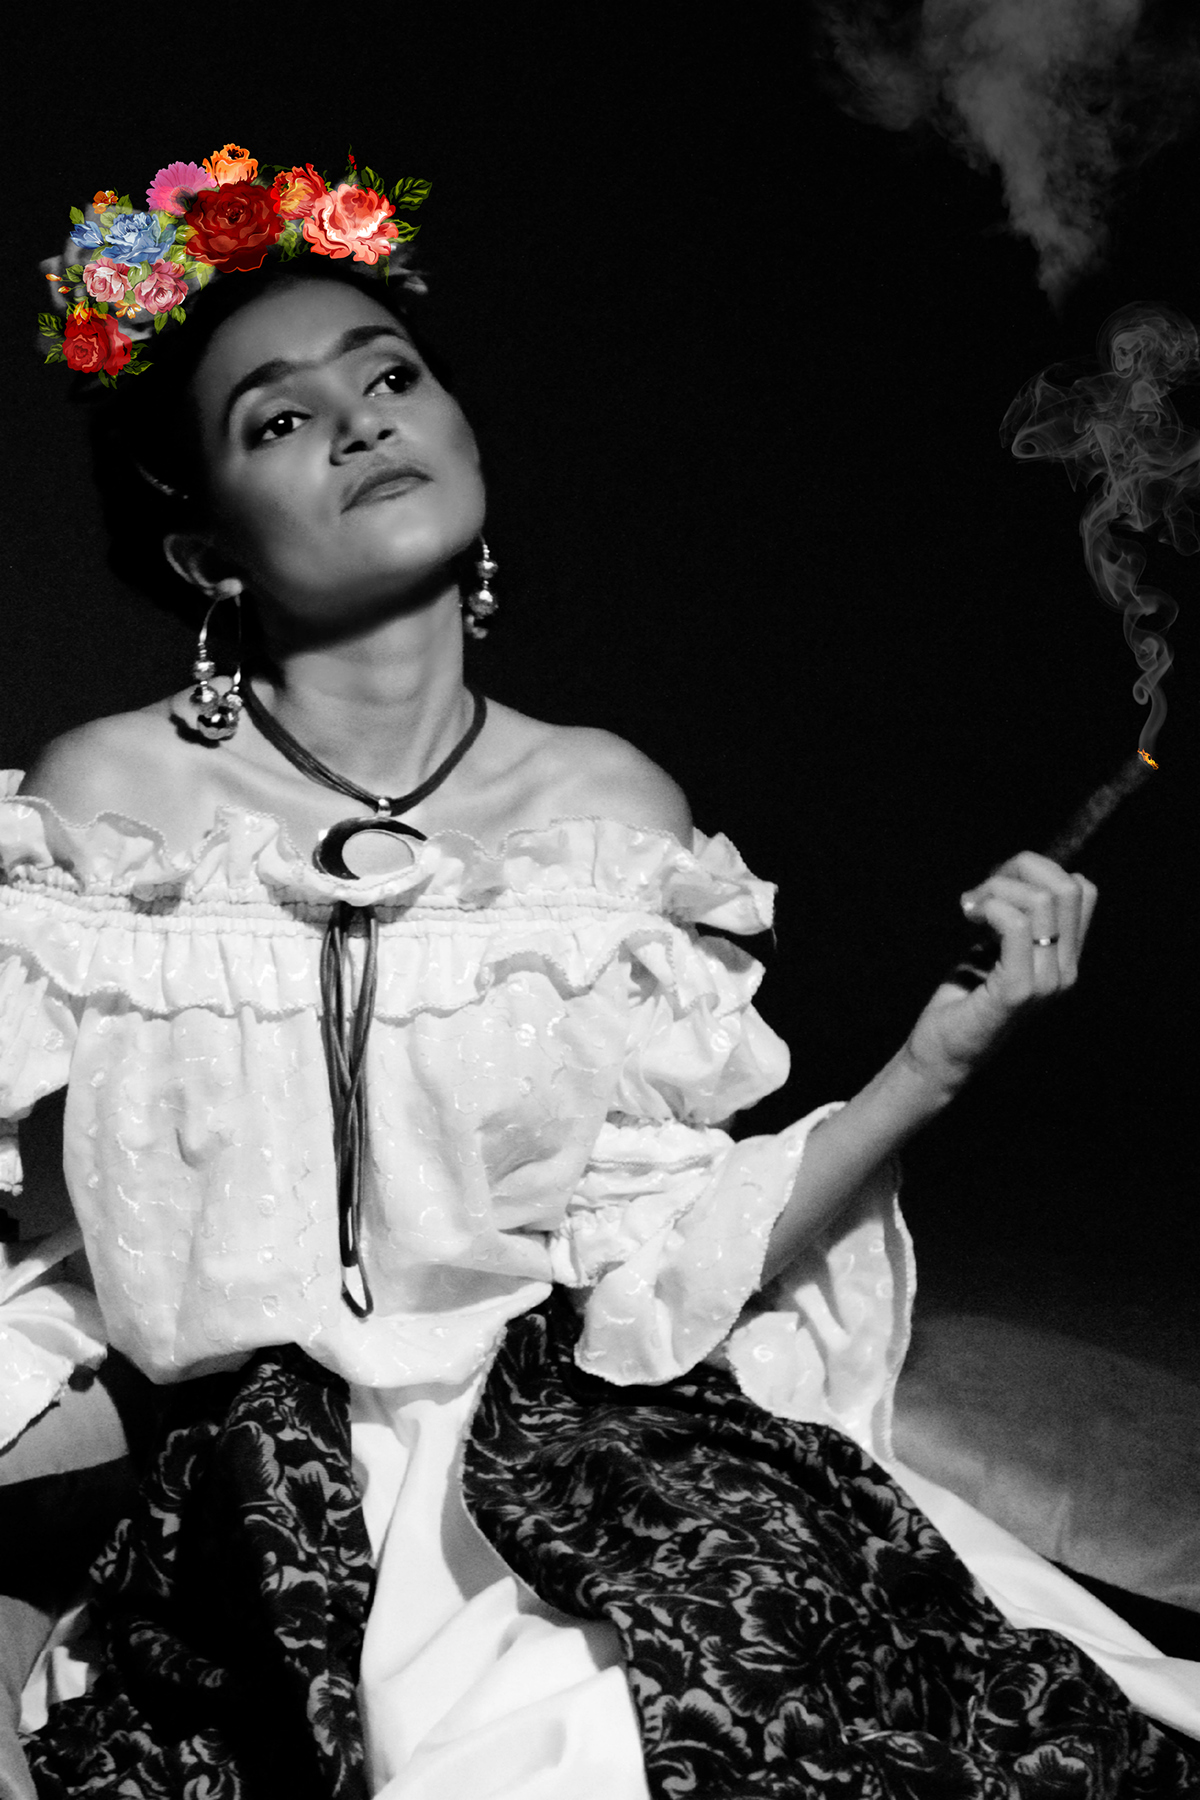 Bucaramanga Frida Kahlo Representación Frida Kahlo Semana Cultural de México.(UDI) Modelo: Madizon Mejia. (Fotografía) (Retoque) YB (Yoba) 2013 Copyright © (YB) yobagraphic YB yoba colombia cultura mexico representación